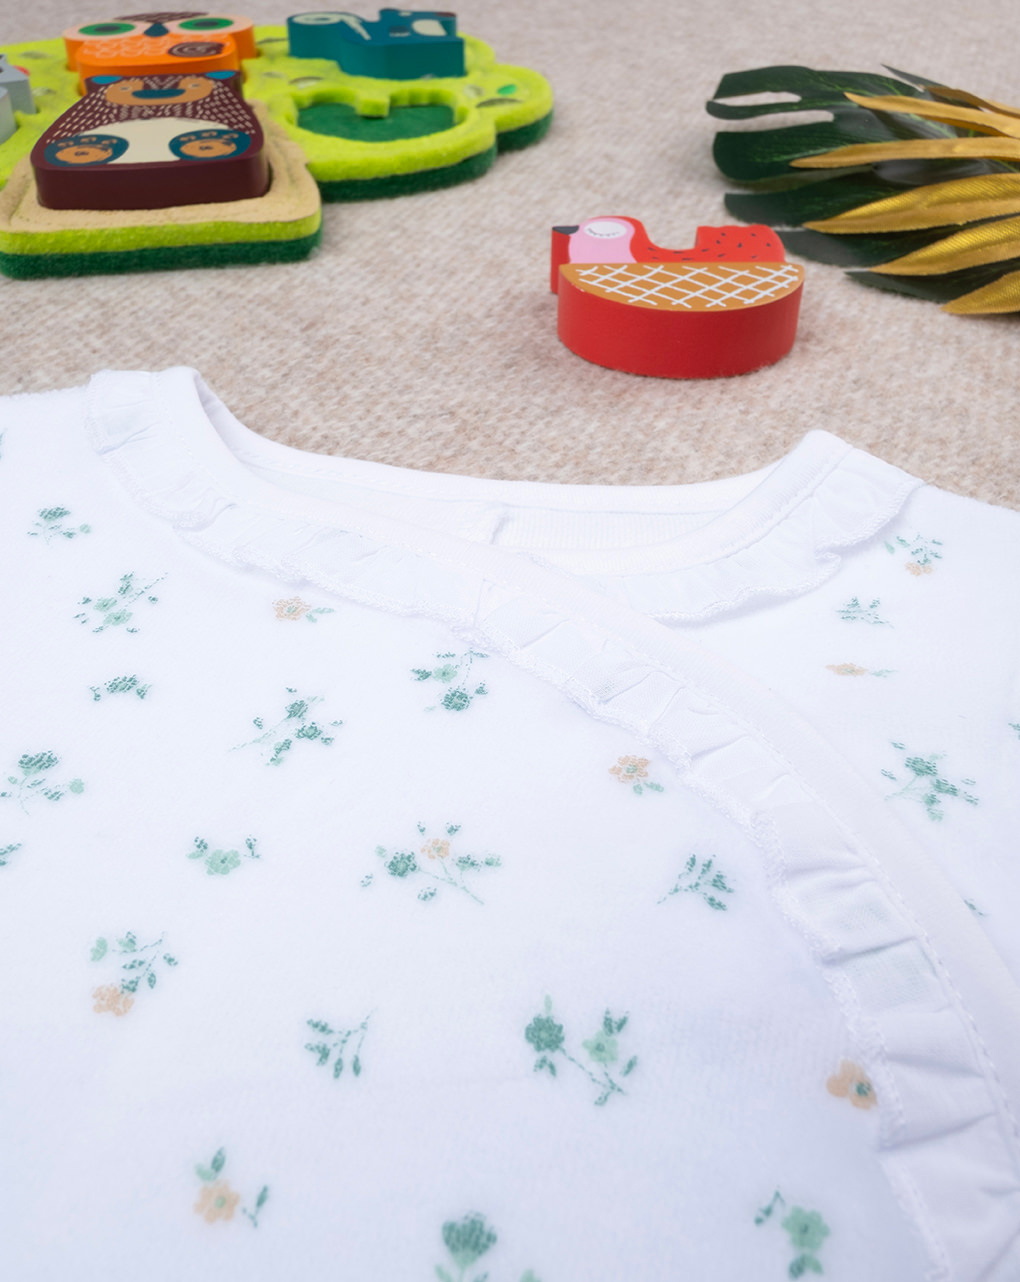 Pijama de chenilla blanca con estampado de flores - Prénatal